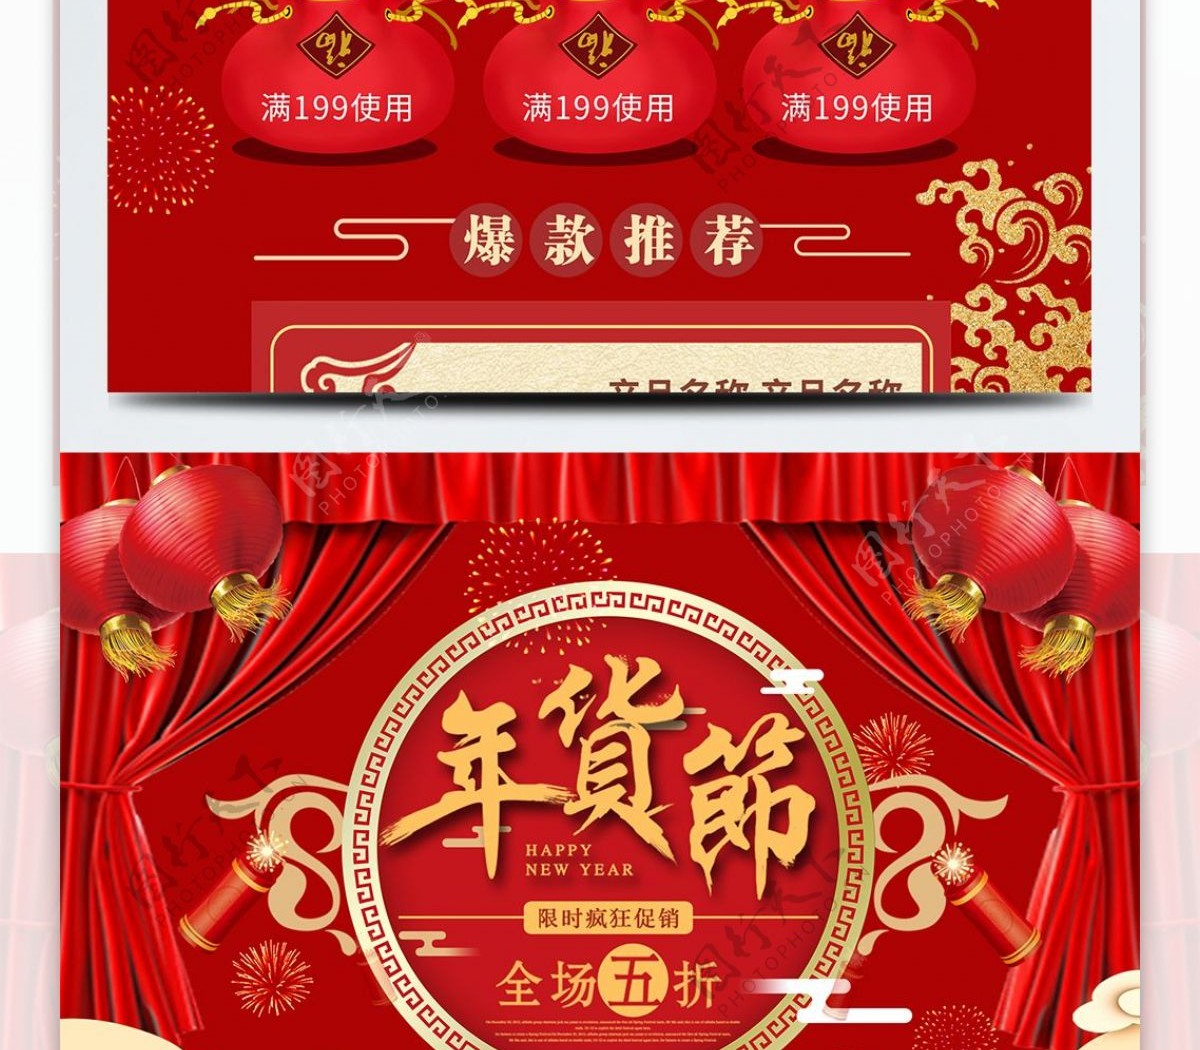 原创红色喜庆新年促销美妆洗护首页模板